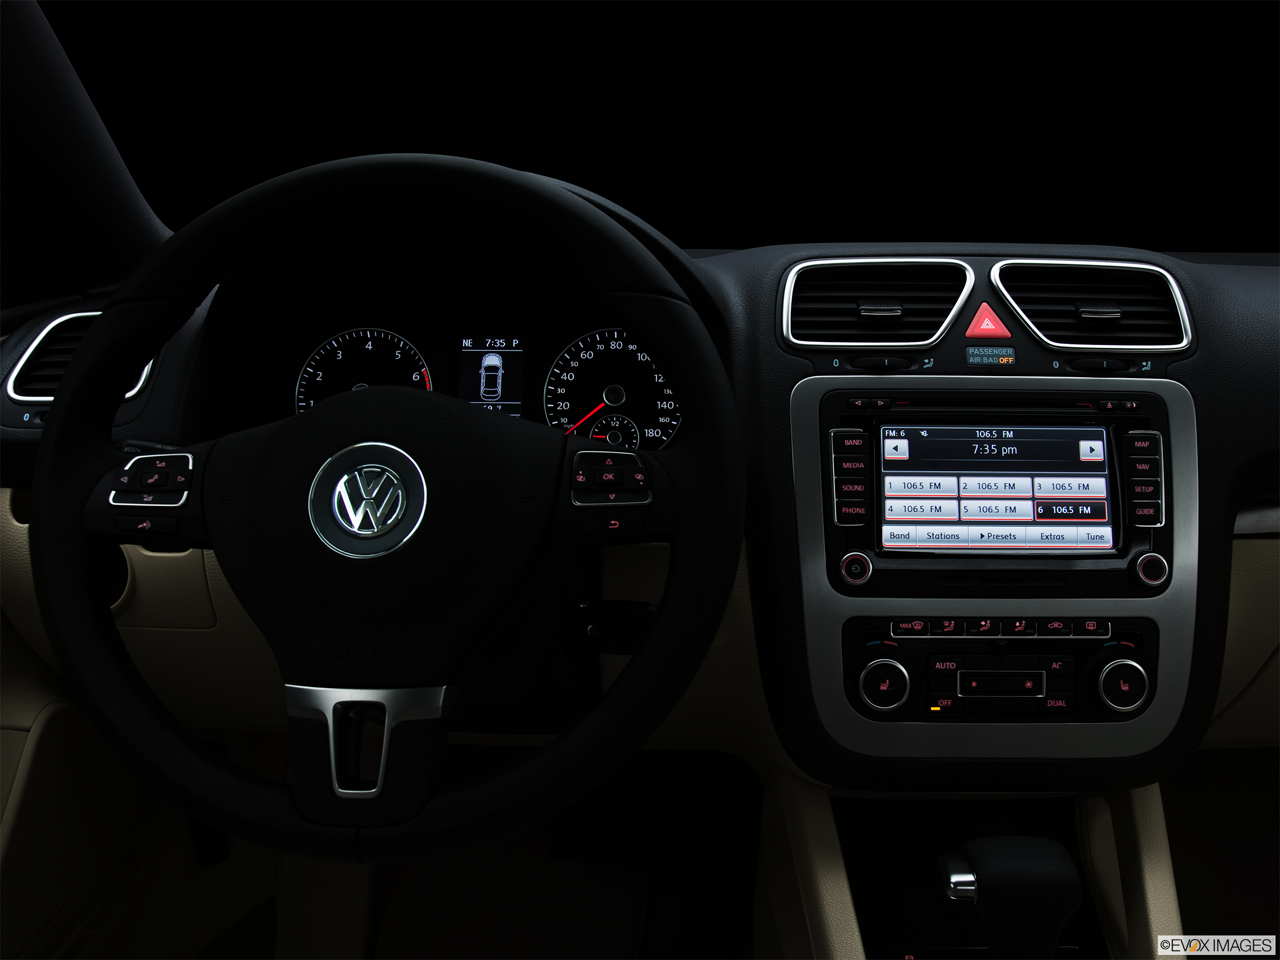 2011 Volkswagen Eos Lux Centered wide dash shot - "night" shot. 